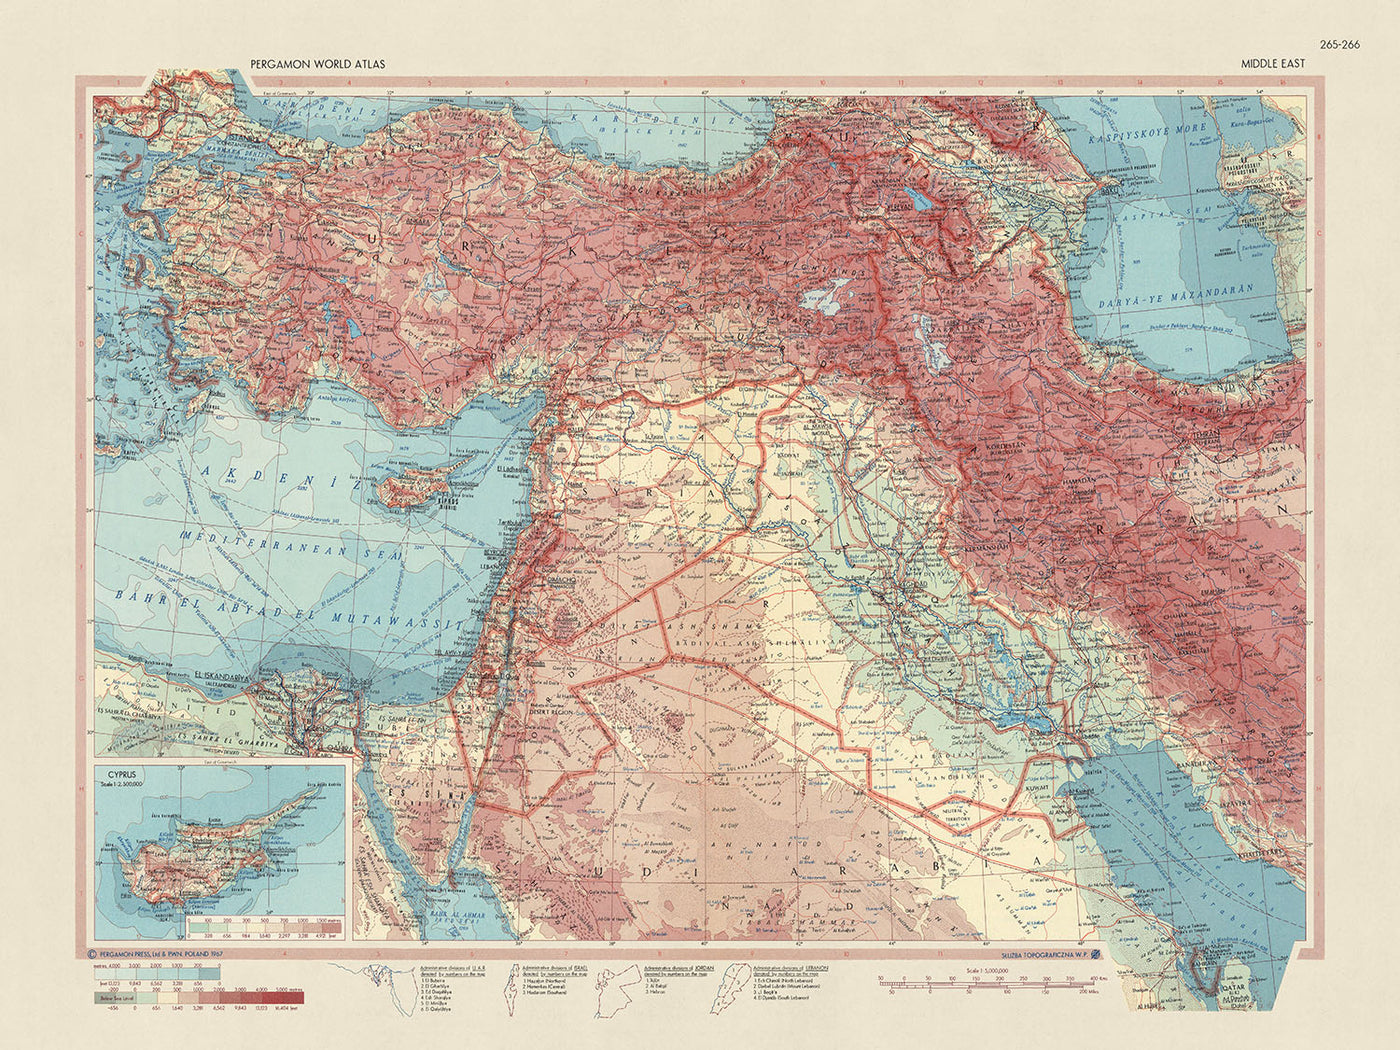 Alte Karte des Nahen Ostens vom Topografischen Dienst der polnischen Armee, 1967: Detaillierte politische und physische Darstellung, Einfügung von Zypern, umfangreiche Abdeckung von Katar bis Kairo